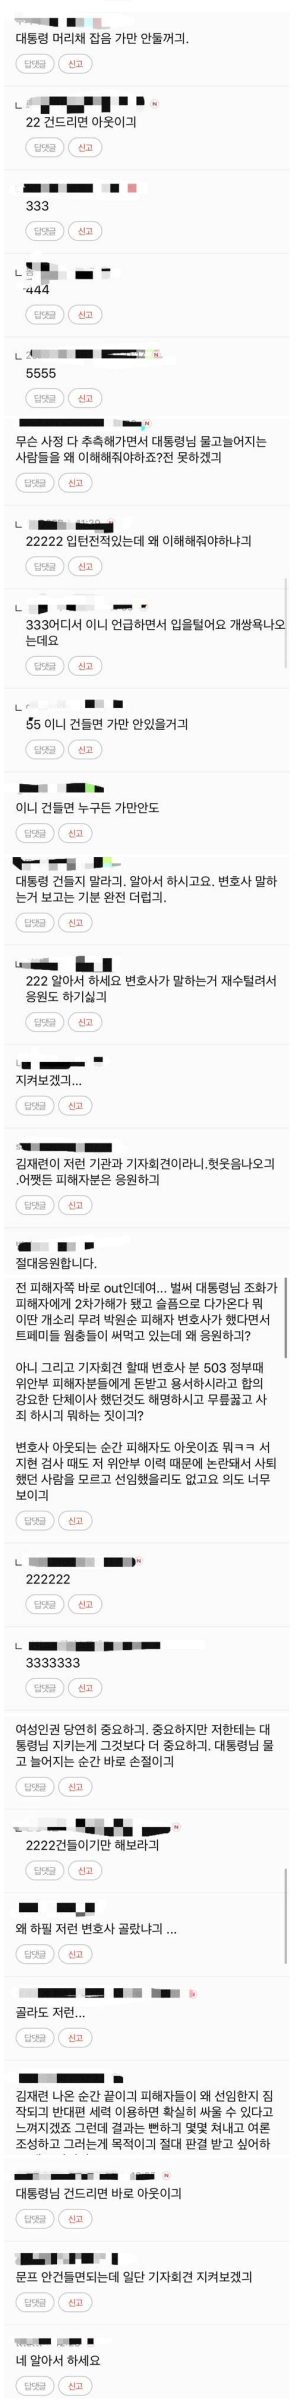 파일:여초 사이트 박원순 사건 반응.png의 섬네일